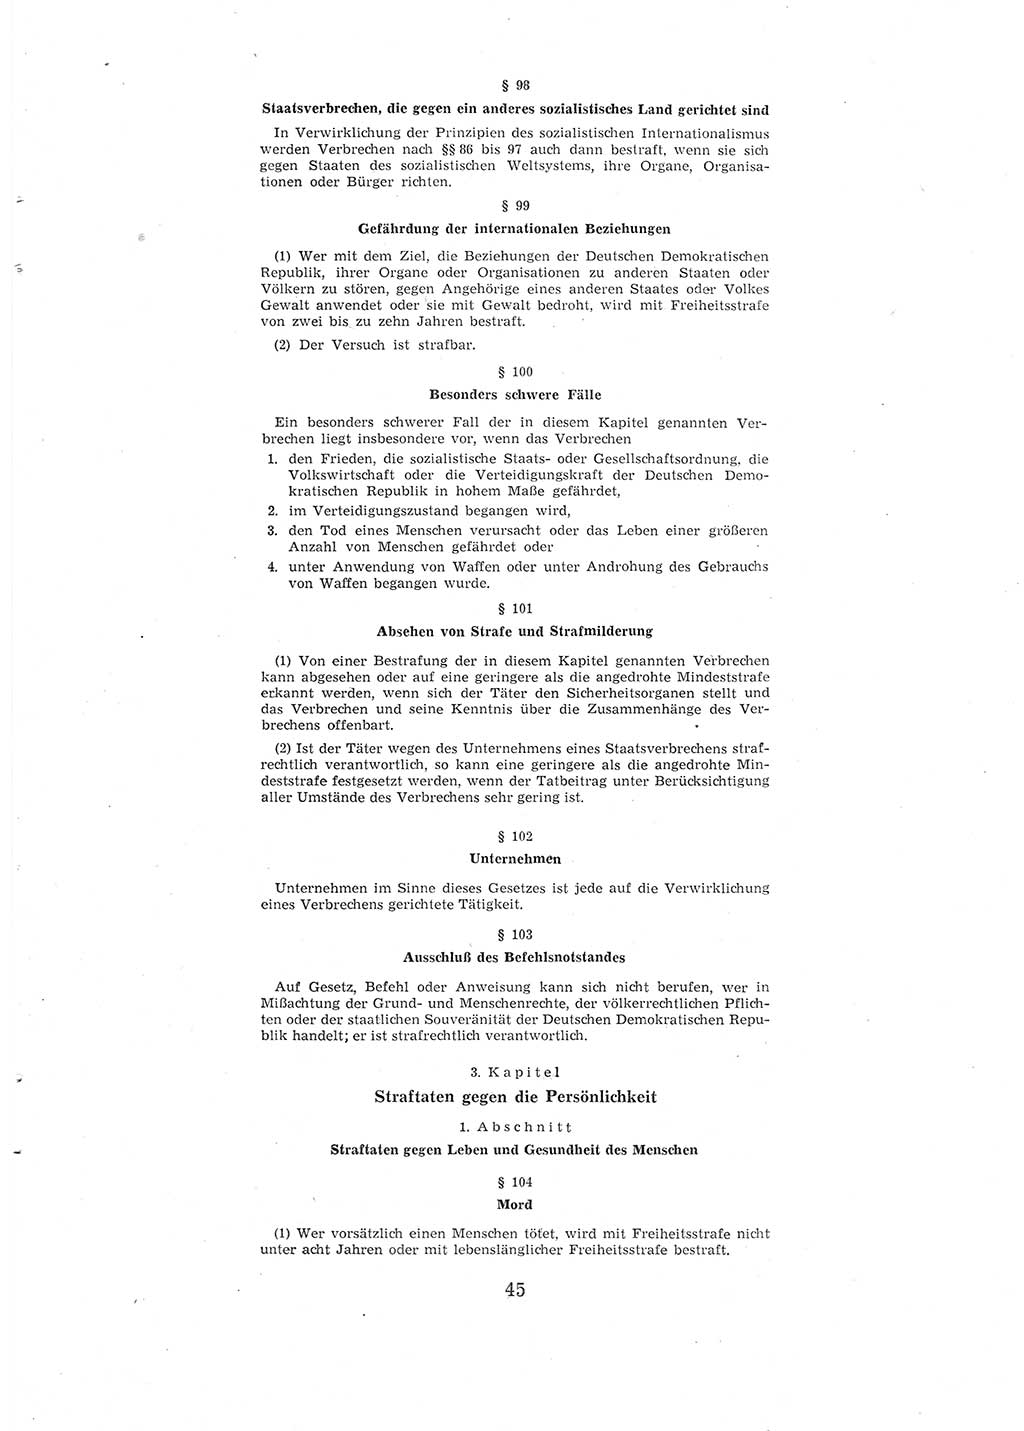 Entwurf des Strafgesetzbuches (StGB) der Deutschen Demokratischen Republik (DDR) 1967, Seite 45 (Entw. StGB DDR 1967, S. 45)